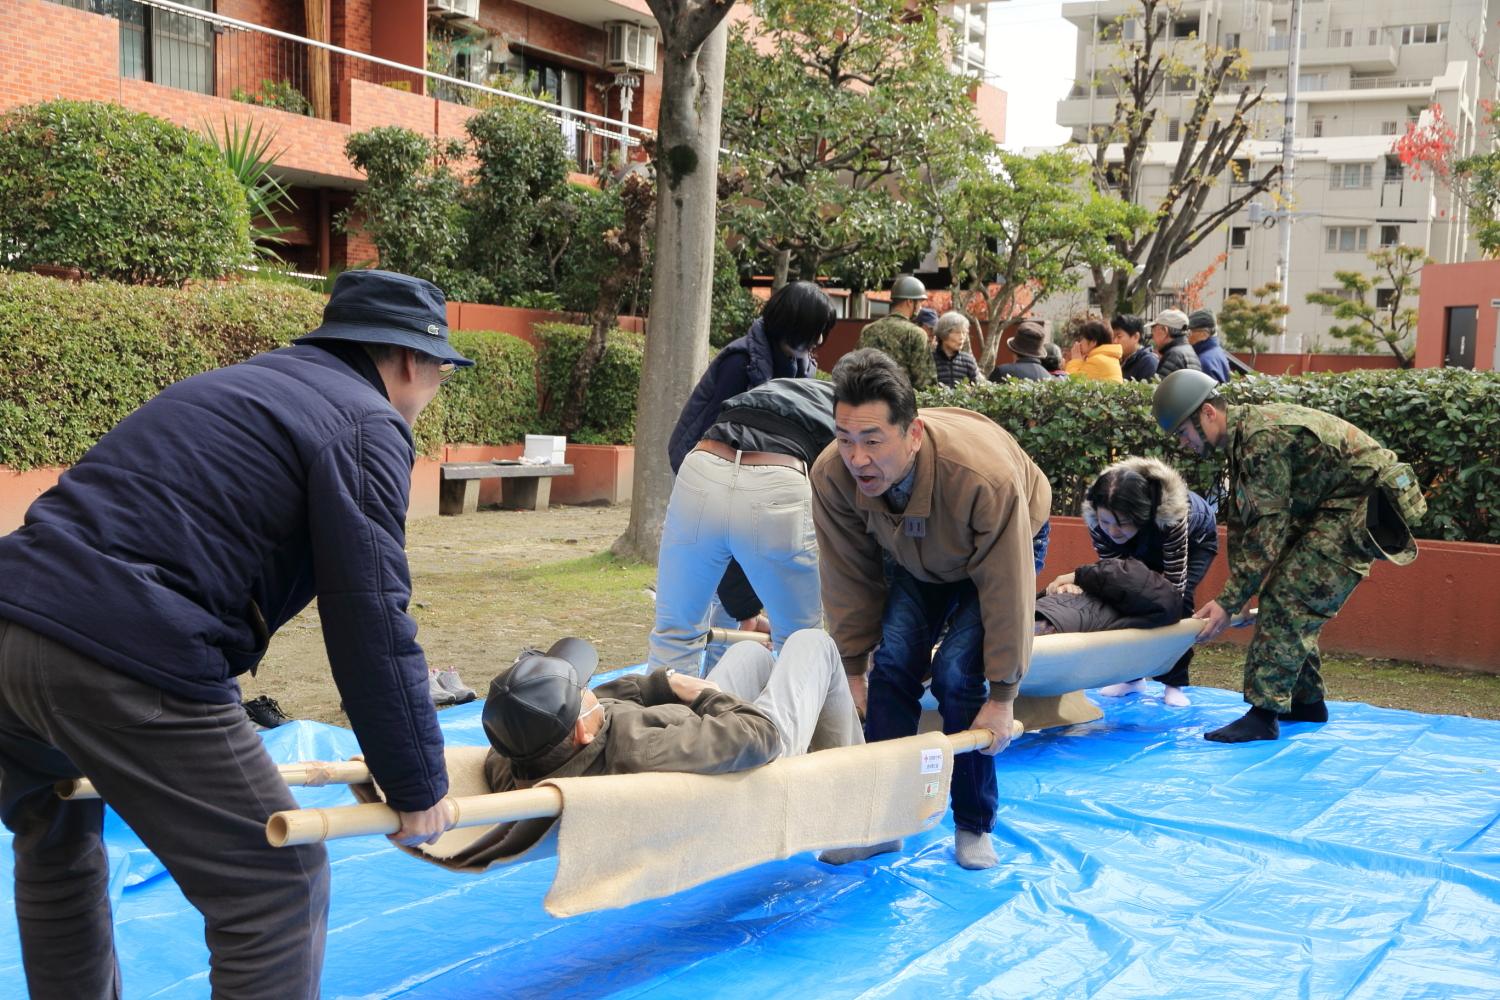 マンションの敷地内(屋外)にブルーシートが敷かれている上で竹竿と毛布で作成された担架を使って住民たちが訓練している写真